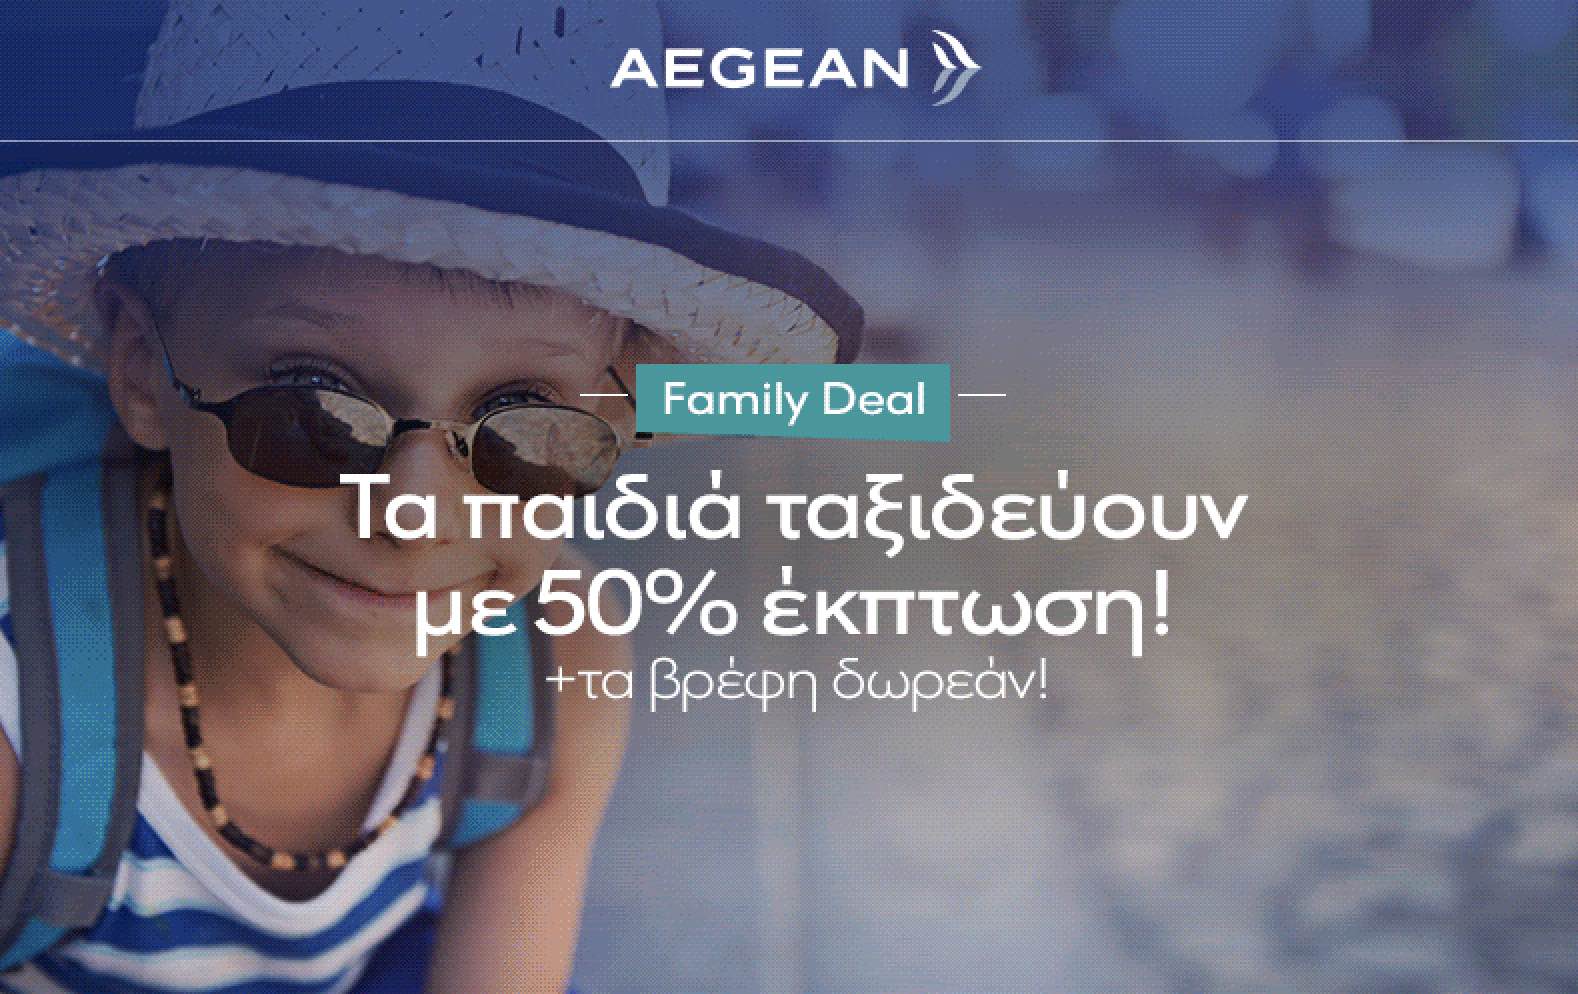 Aegean-Olympic: Εκπτώσεις για οικογένειες στα εισιτήρια της θερινής περιόδου